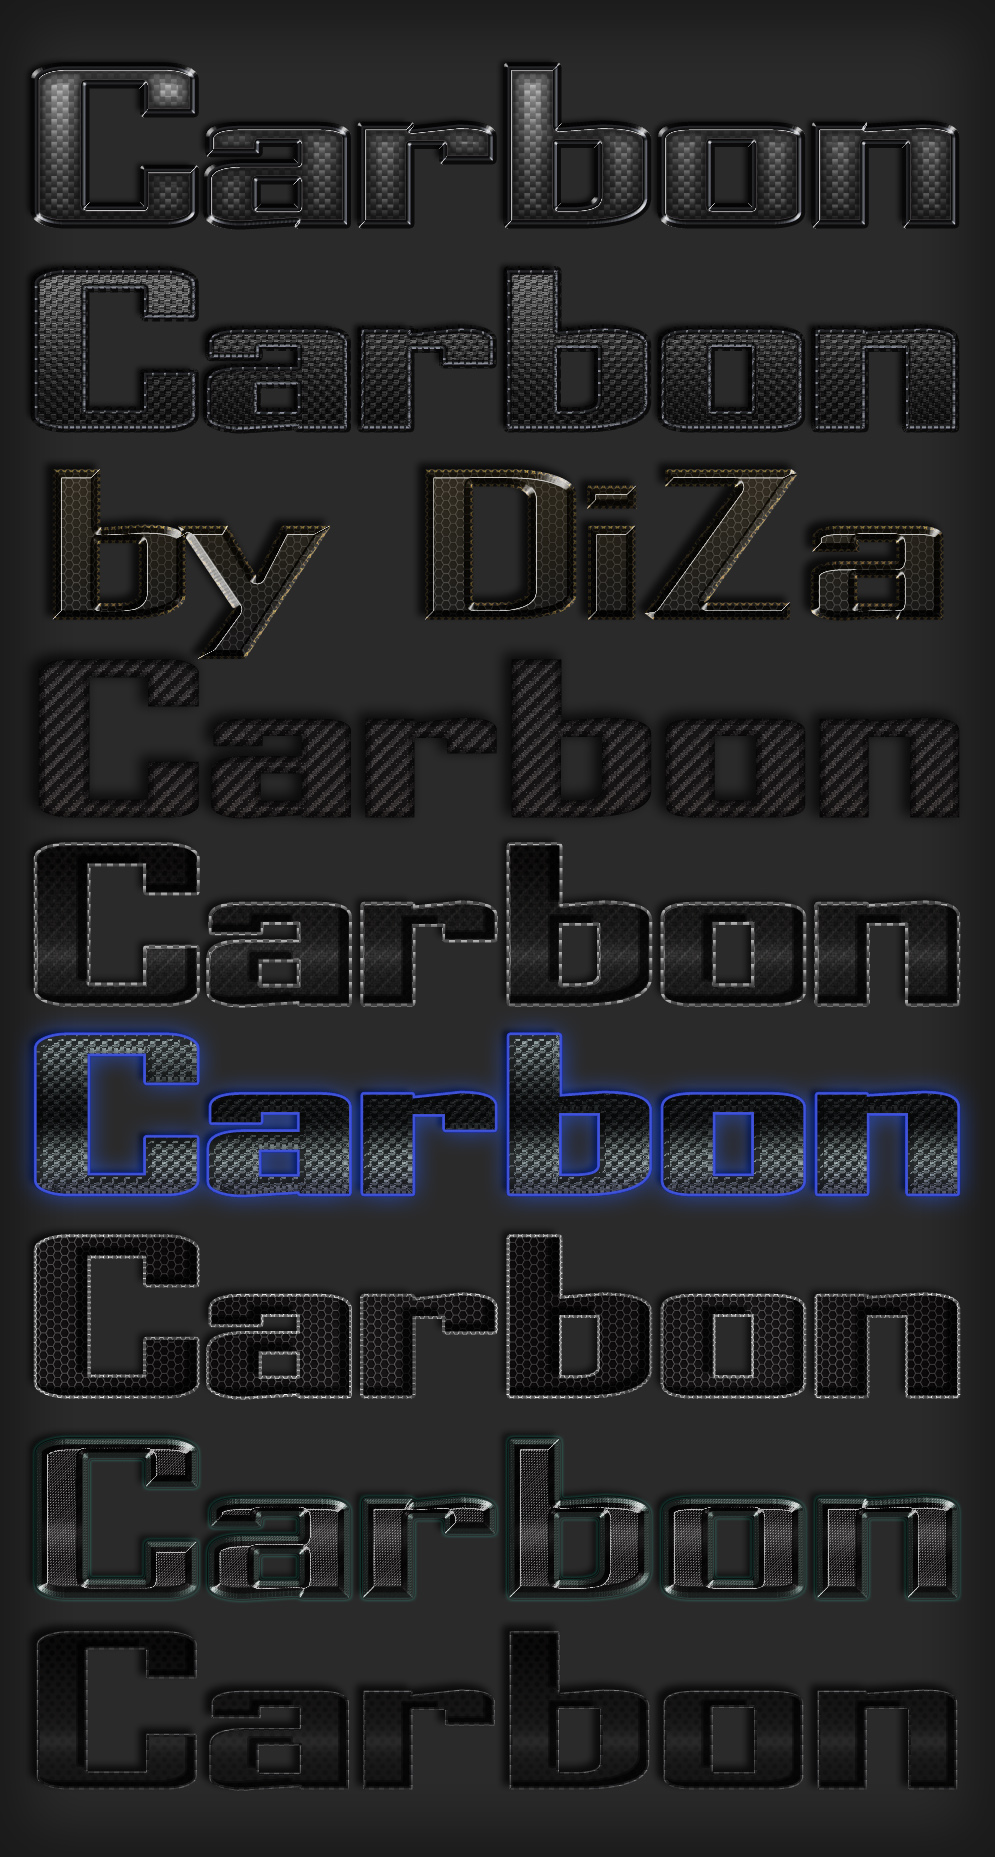 carbonbydizakljms.jpg